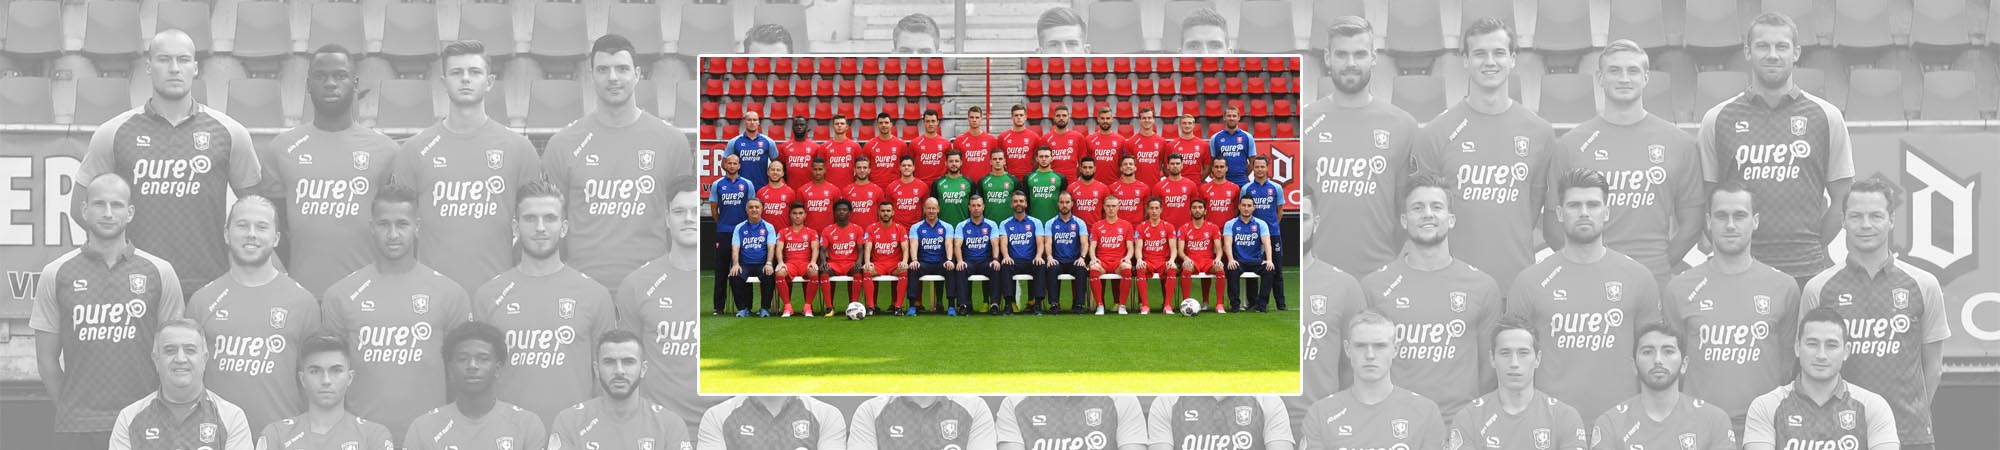 FC Twente seizoen 2017/2018